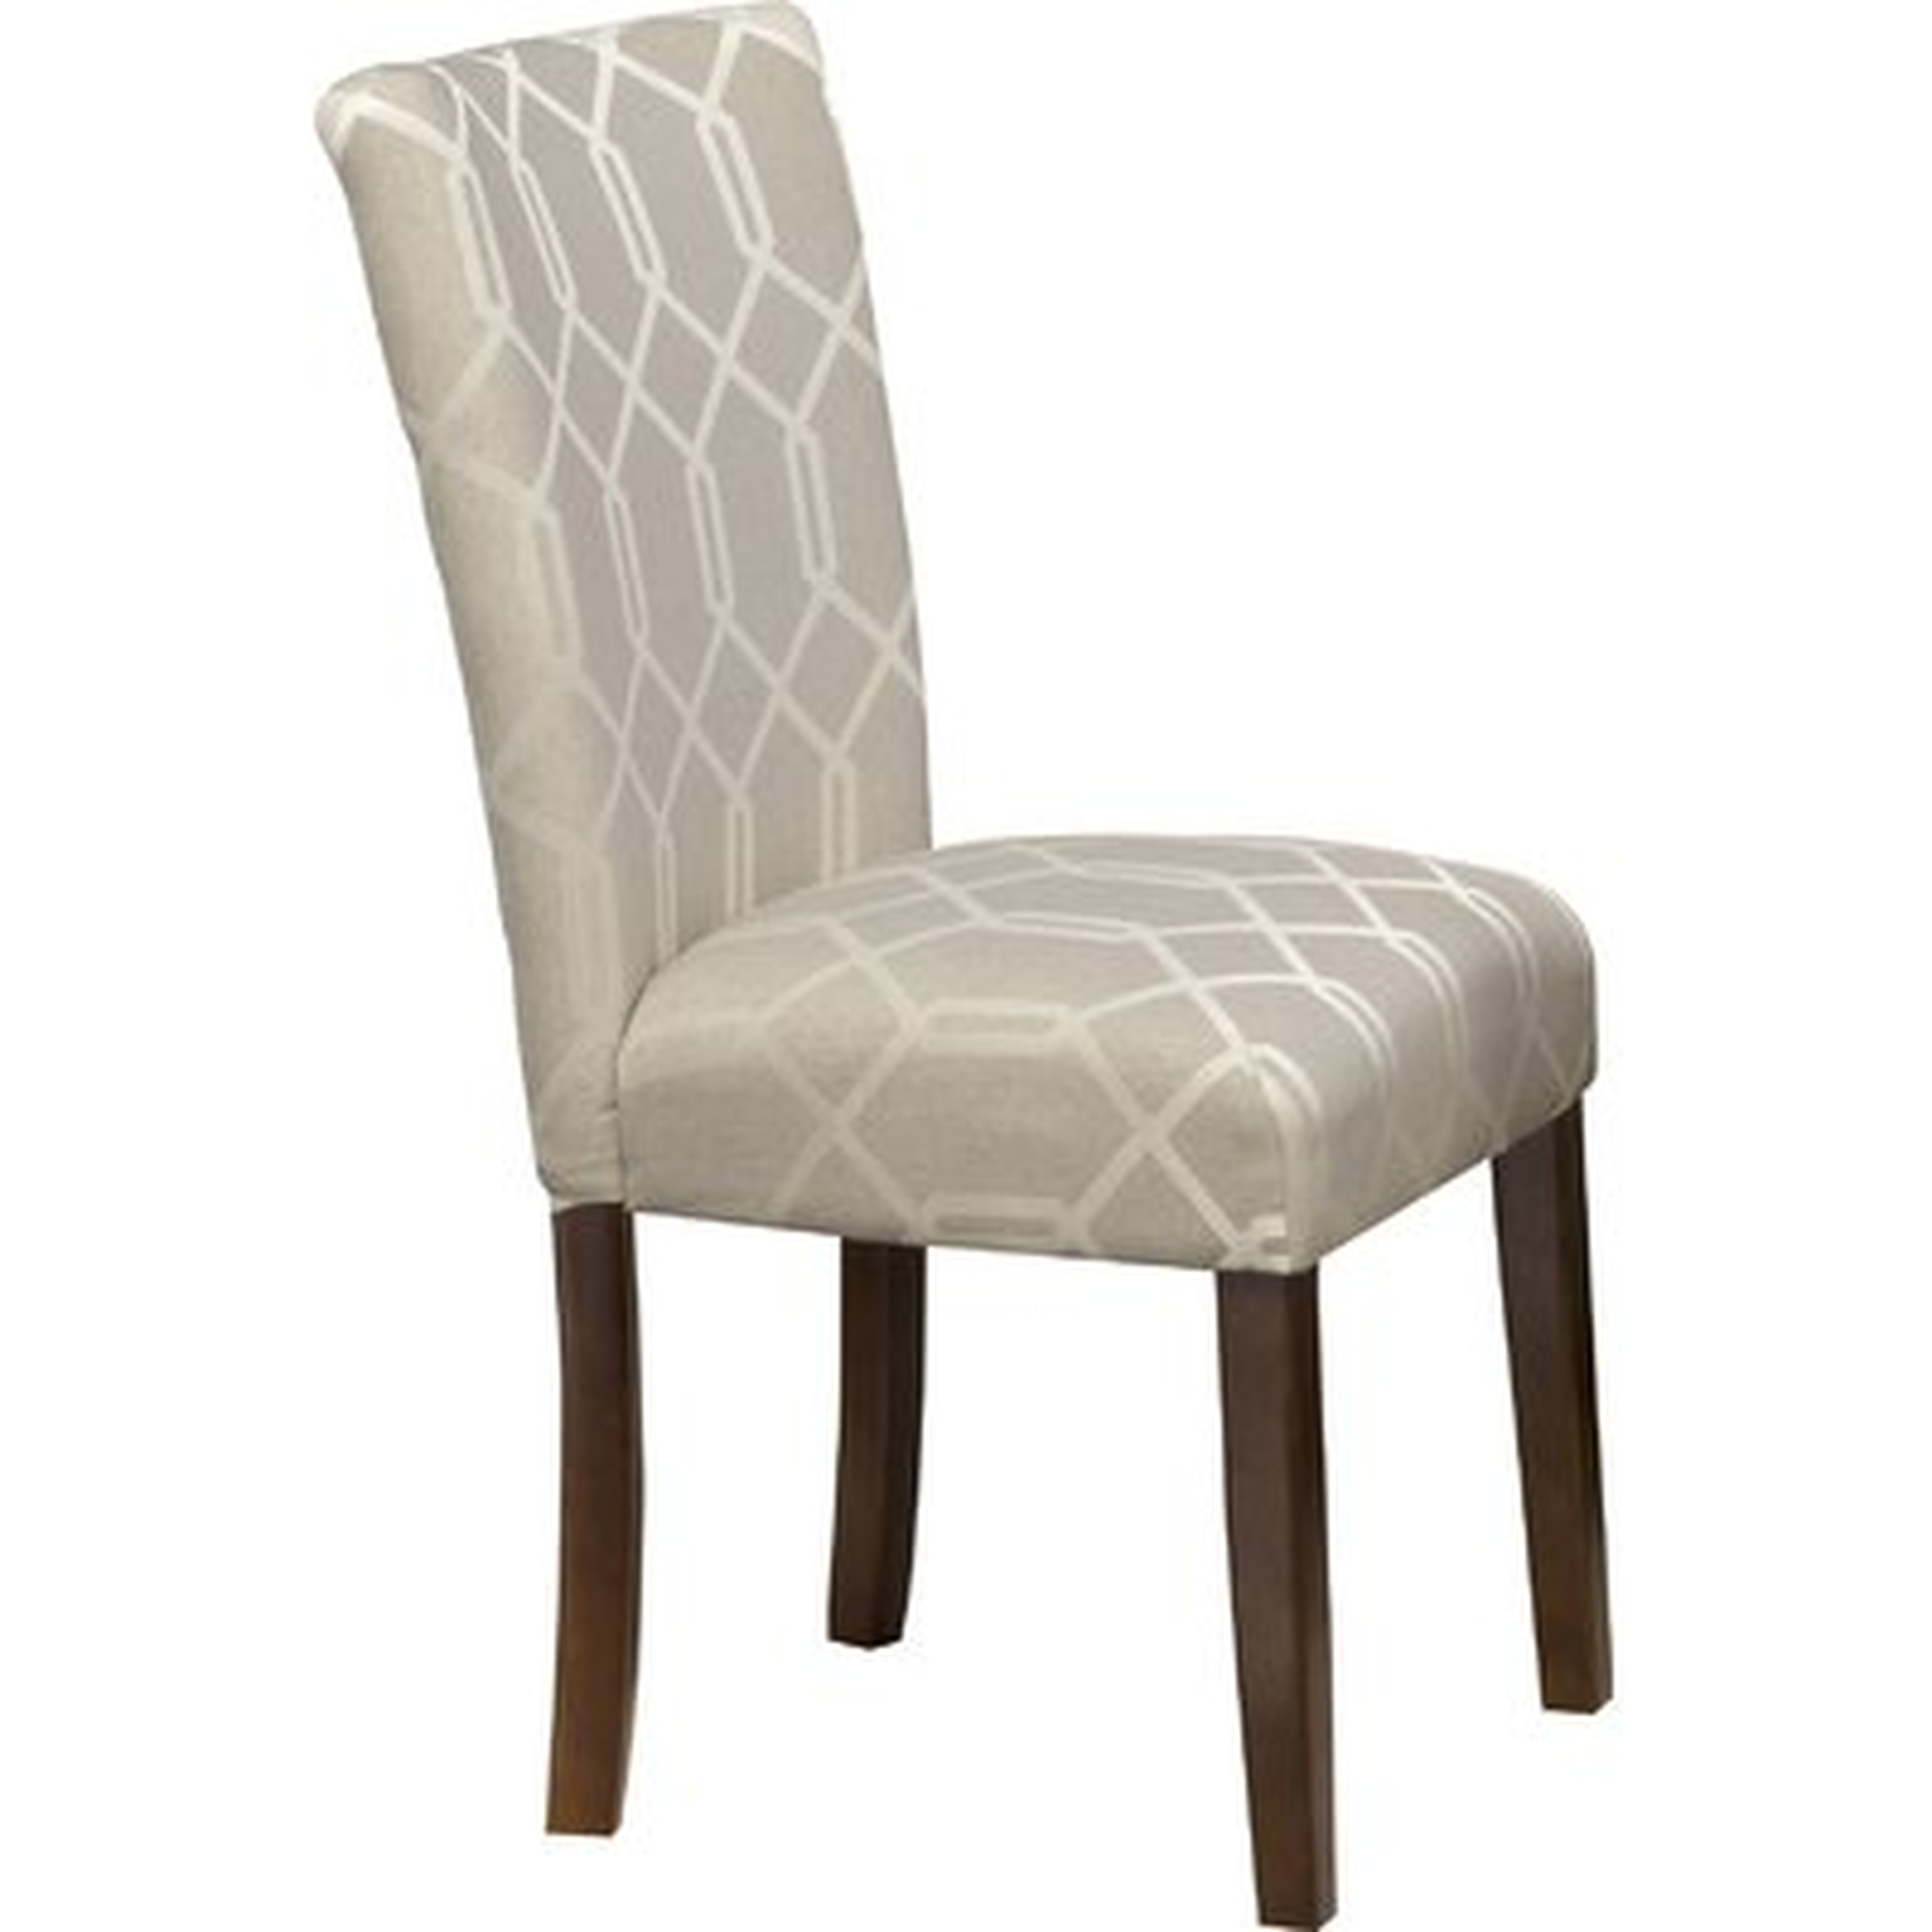 Feldman Upholstered Dining Chair - Birch Lane